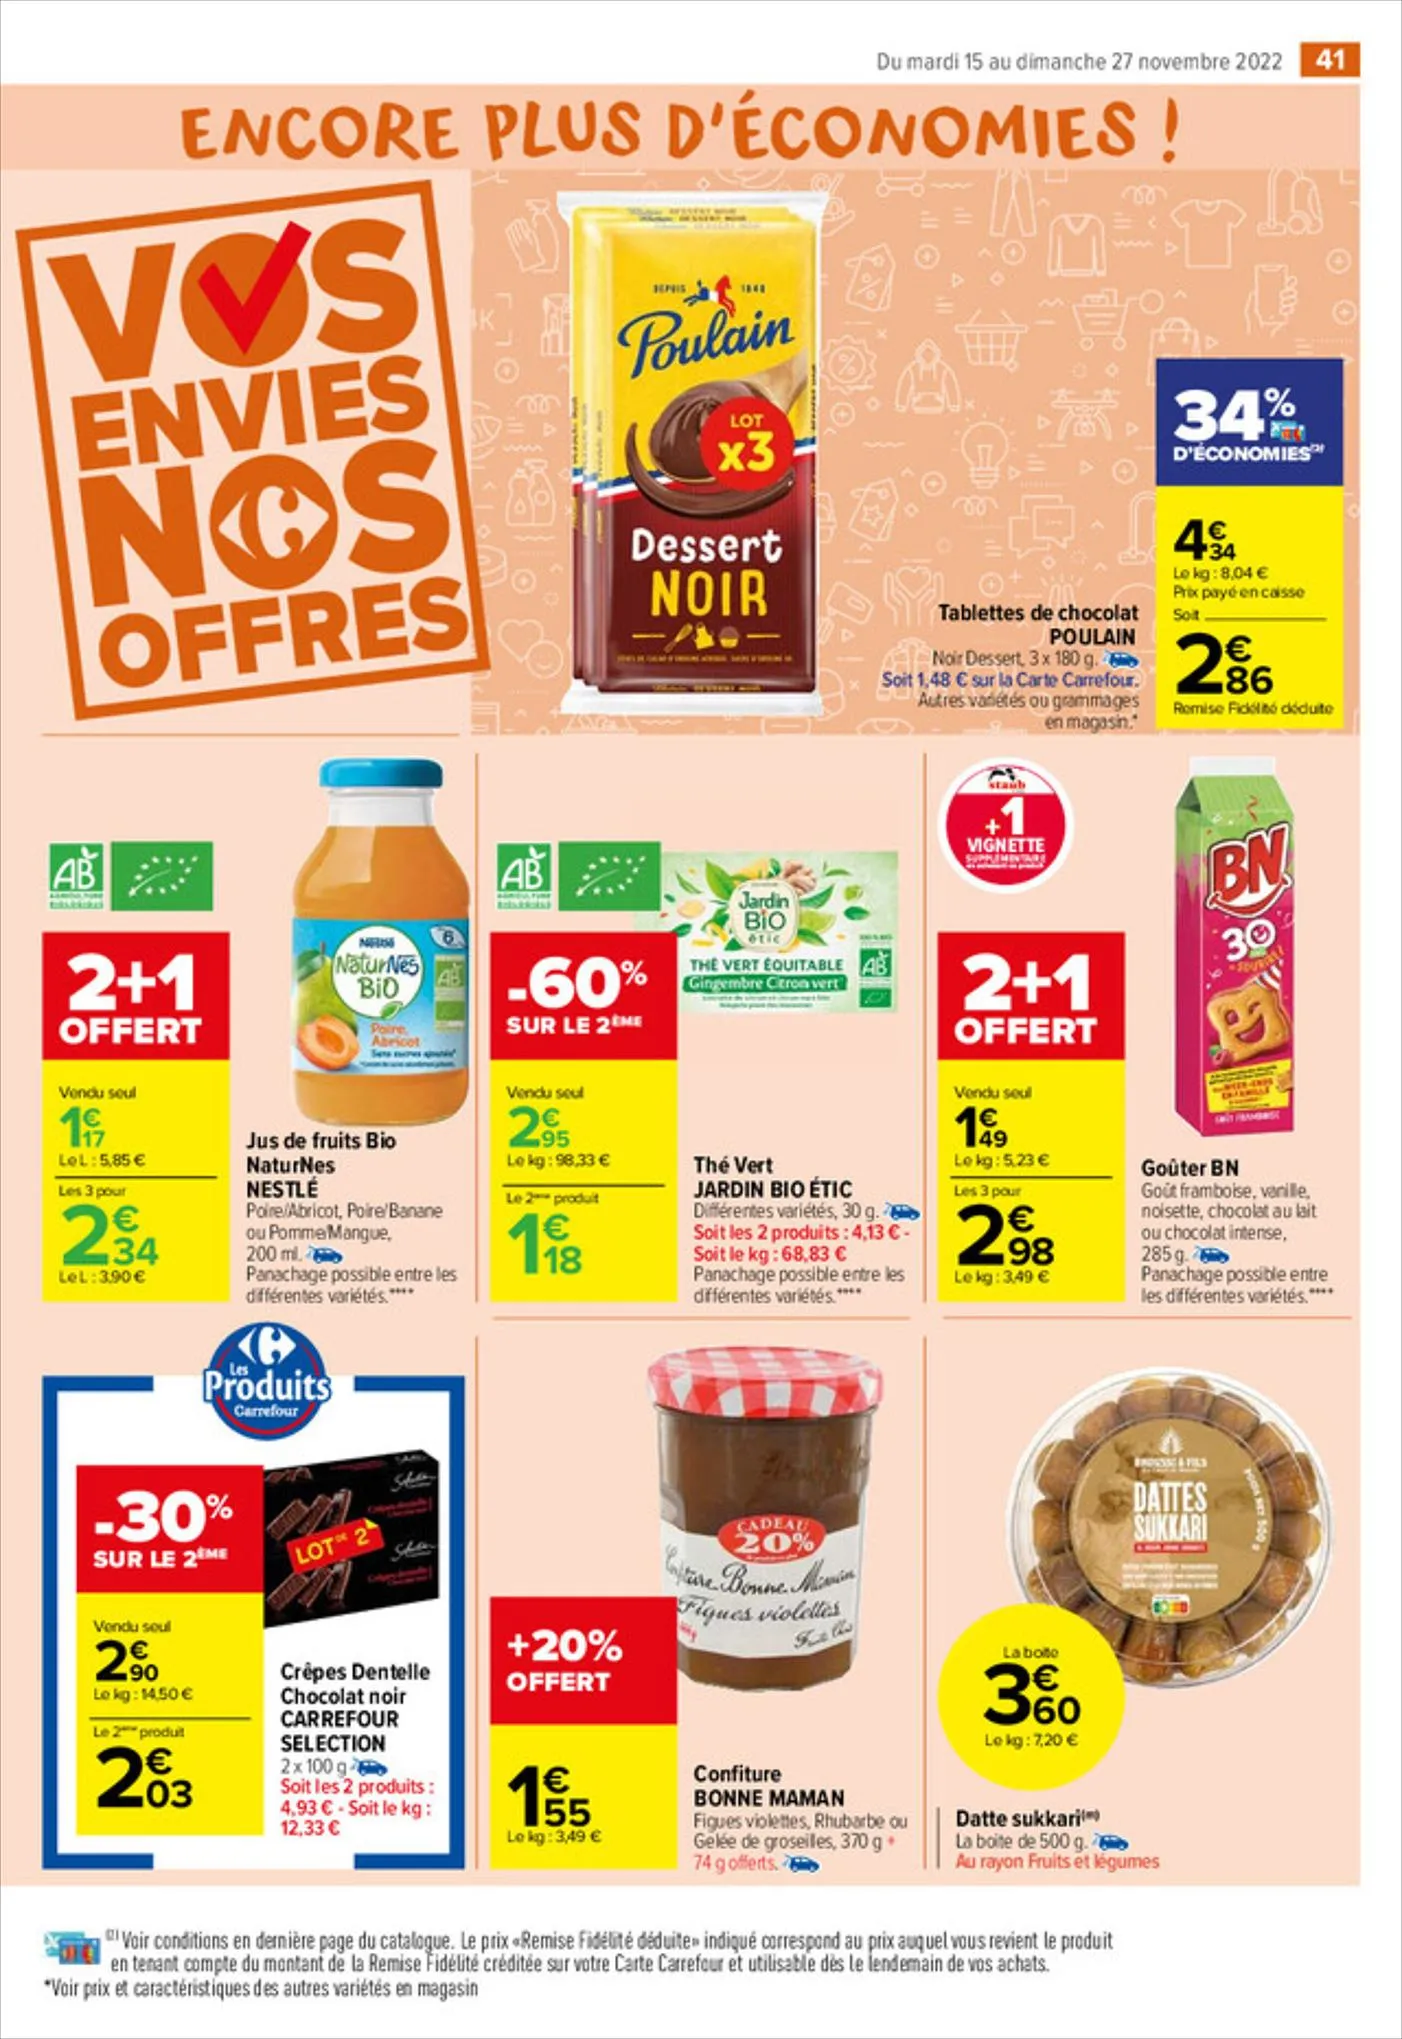 Catalogue Vos envies nos promos Ferrero, page 00043